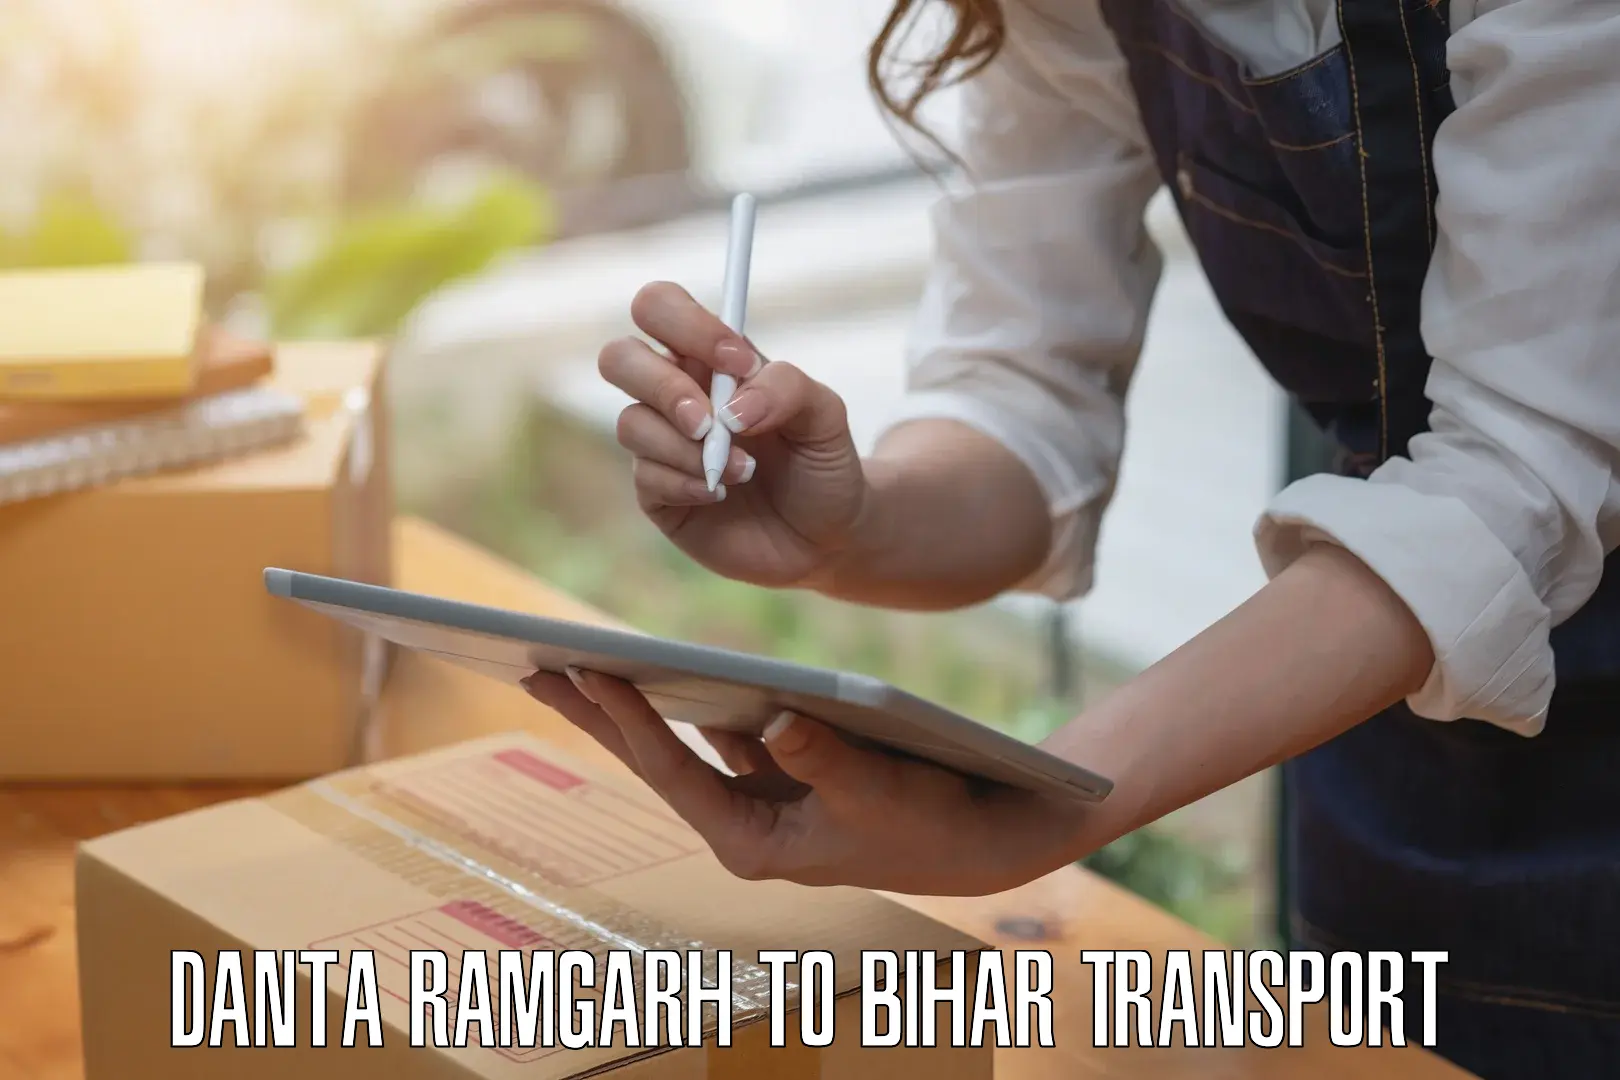 Bike shipping service Danta Ramgarh to Dhaka